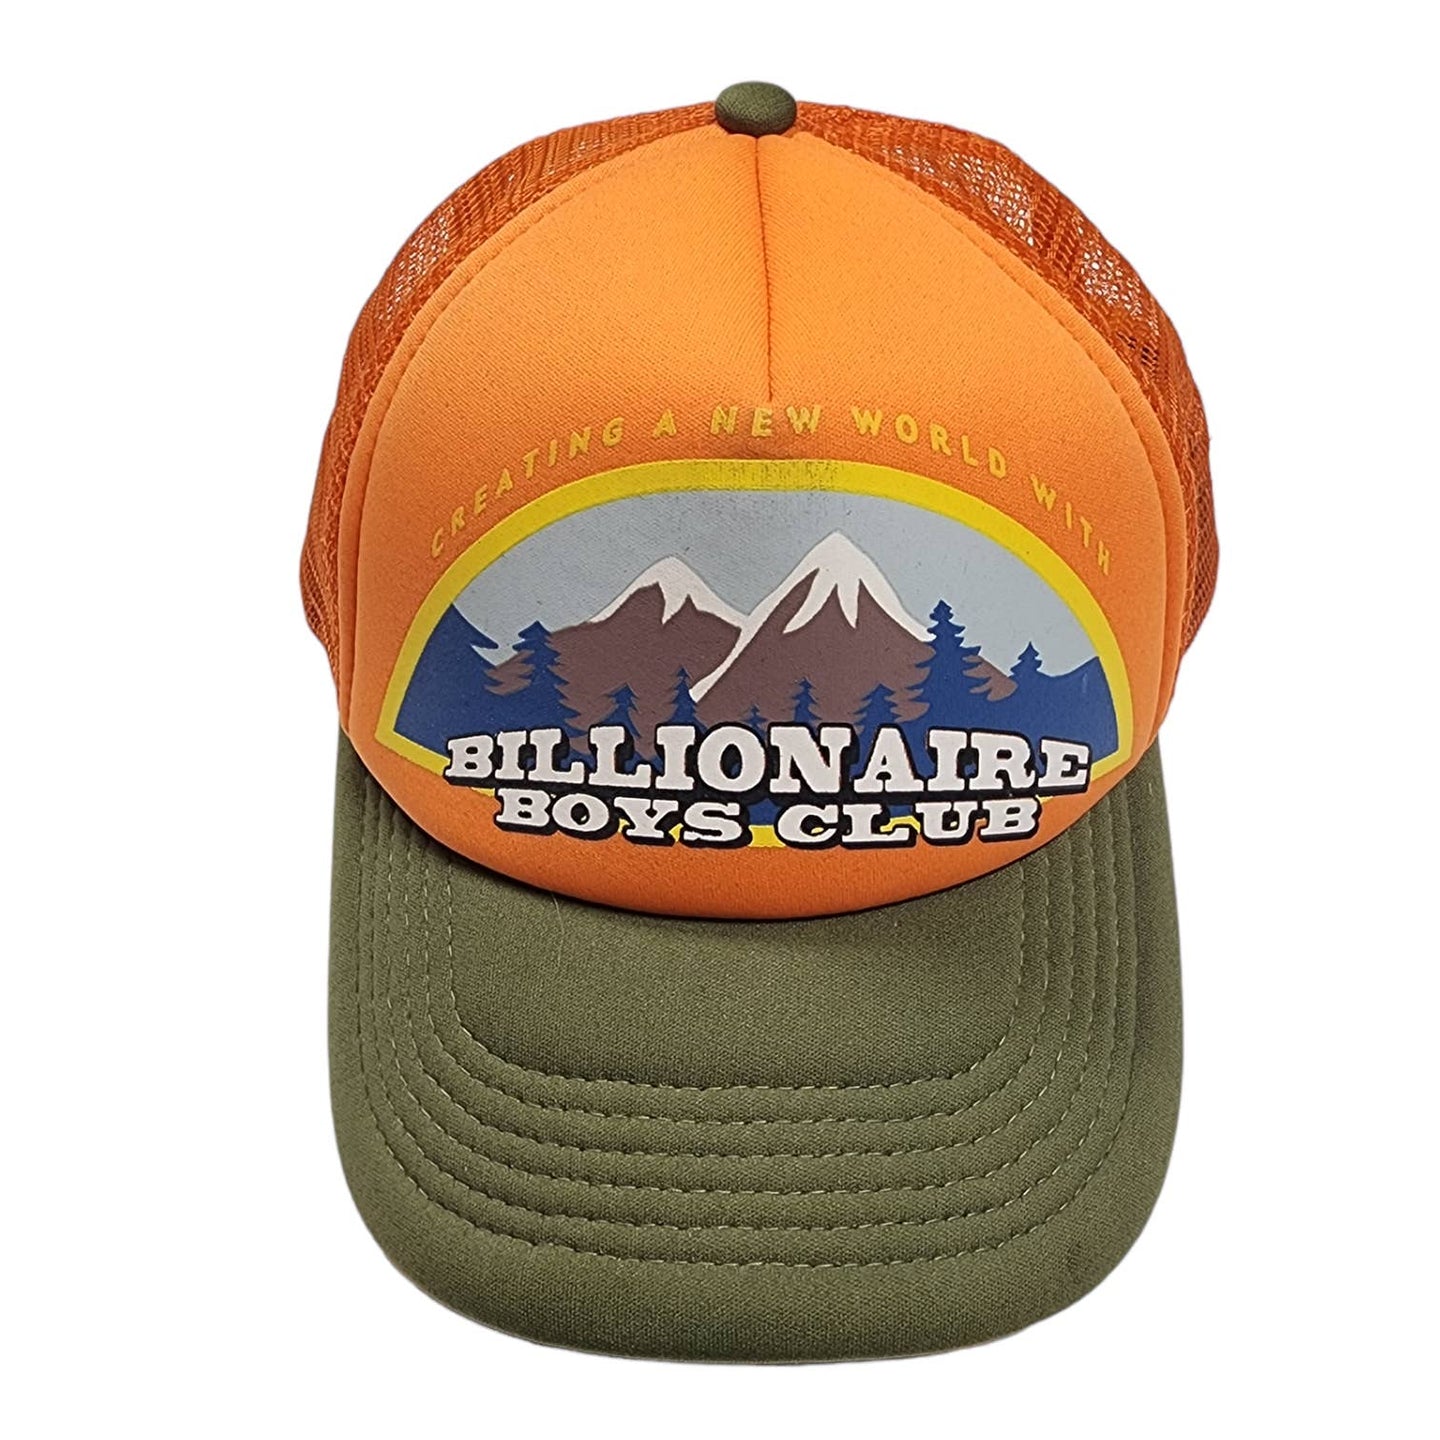 Billionaire Boys Club Trucker Hat Wilderness OLIVE ORANGE Archive